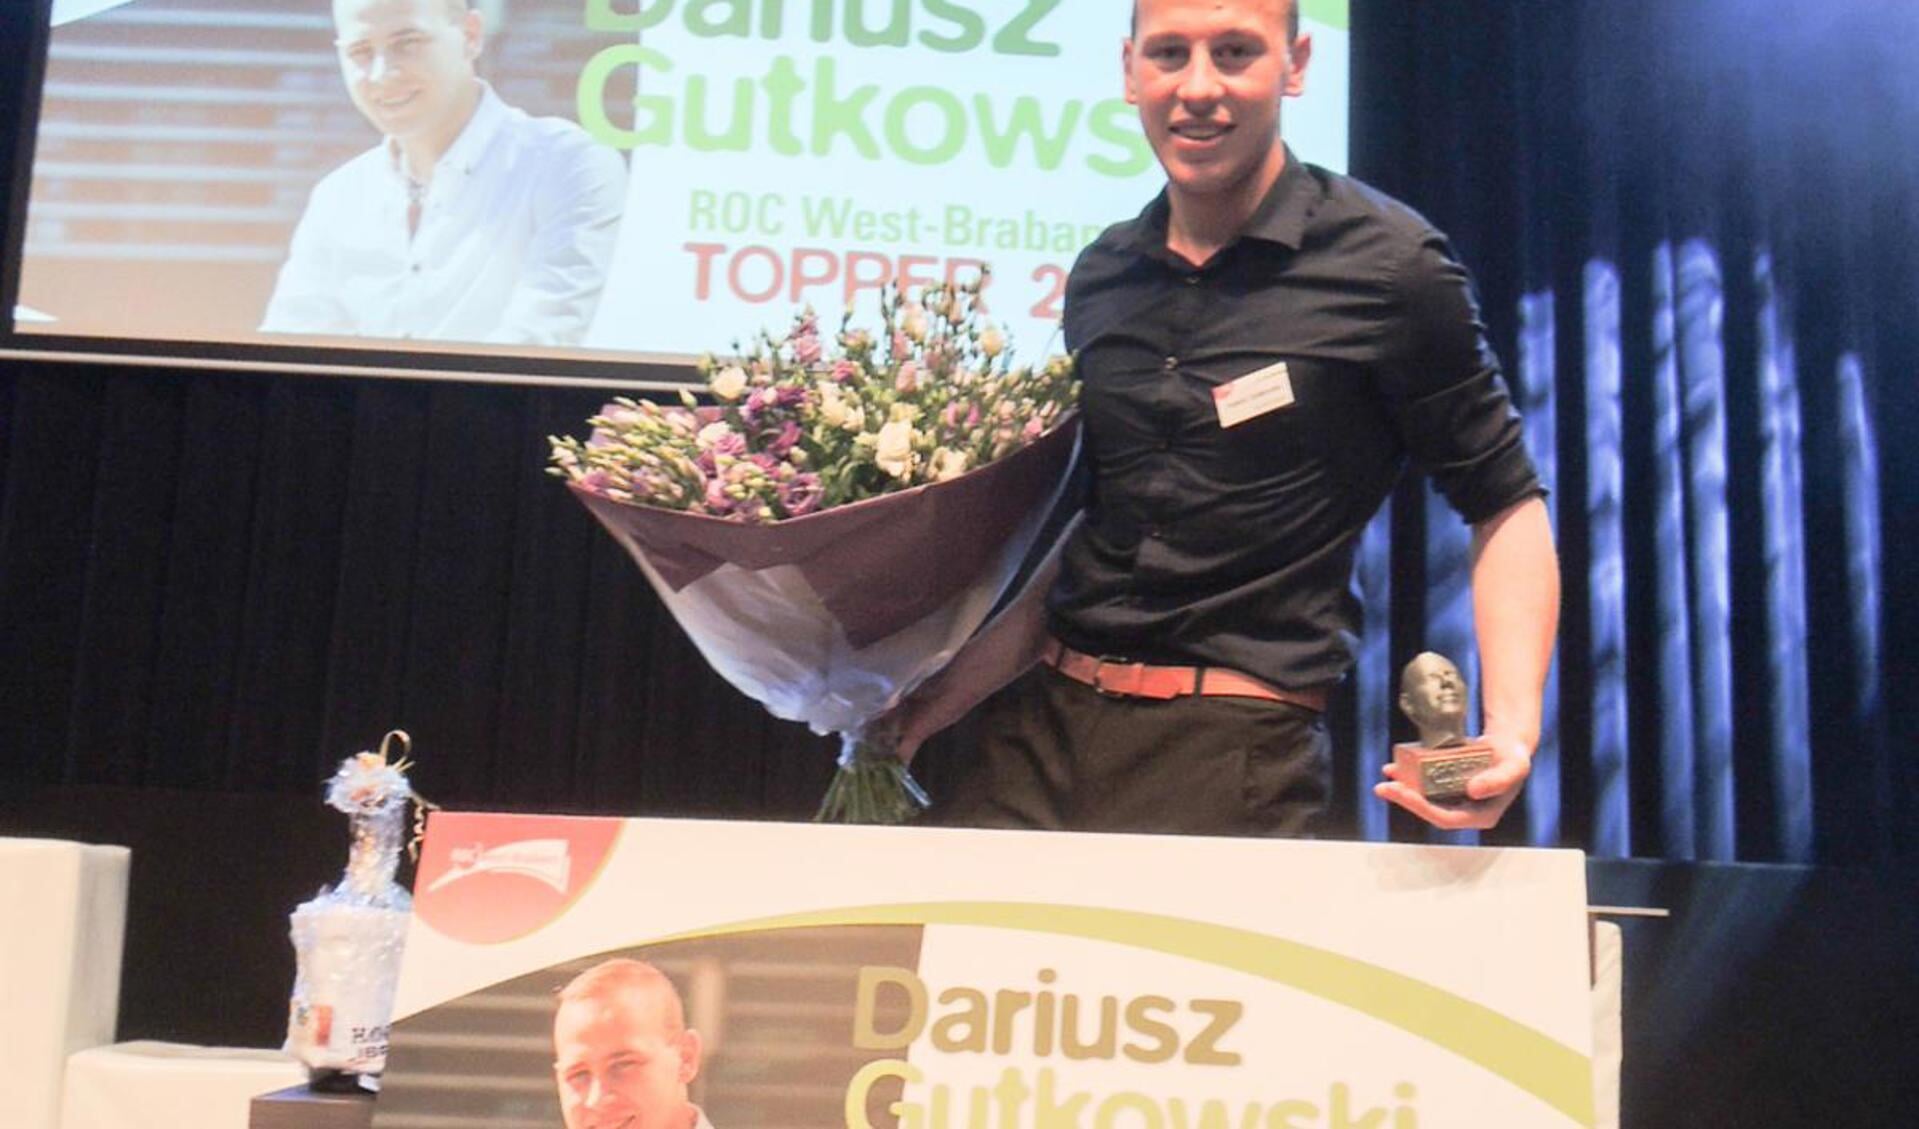 Darius Gutkowski ROC Topper 2014.